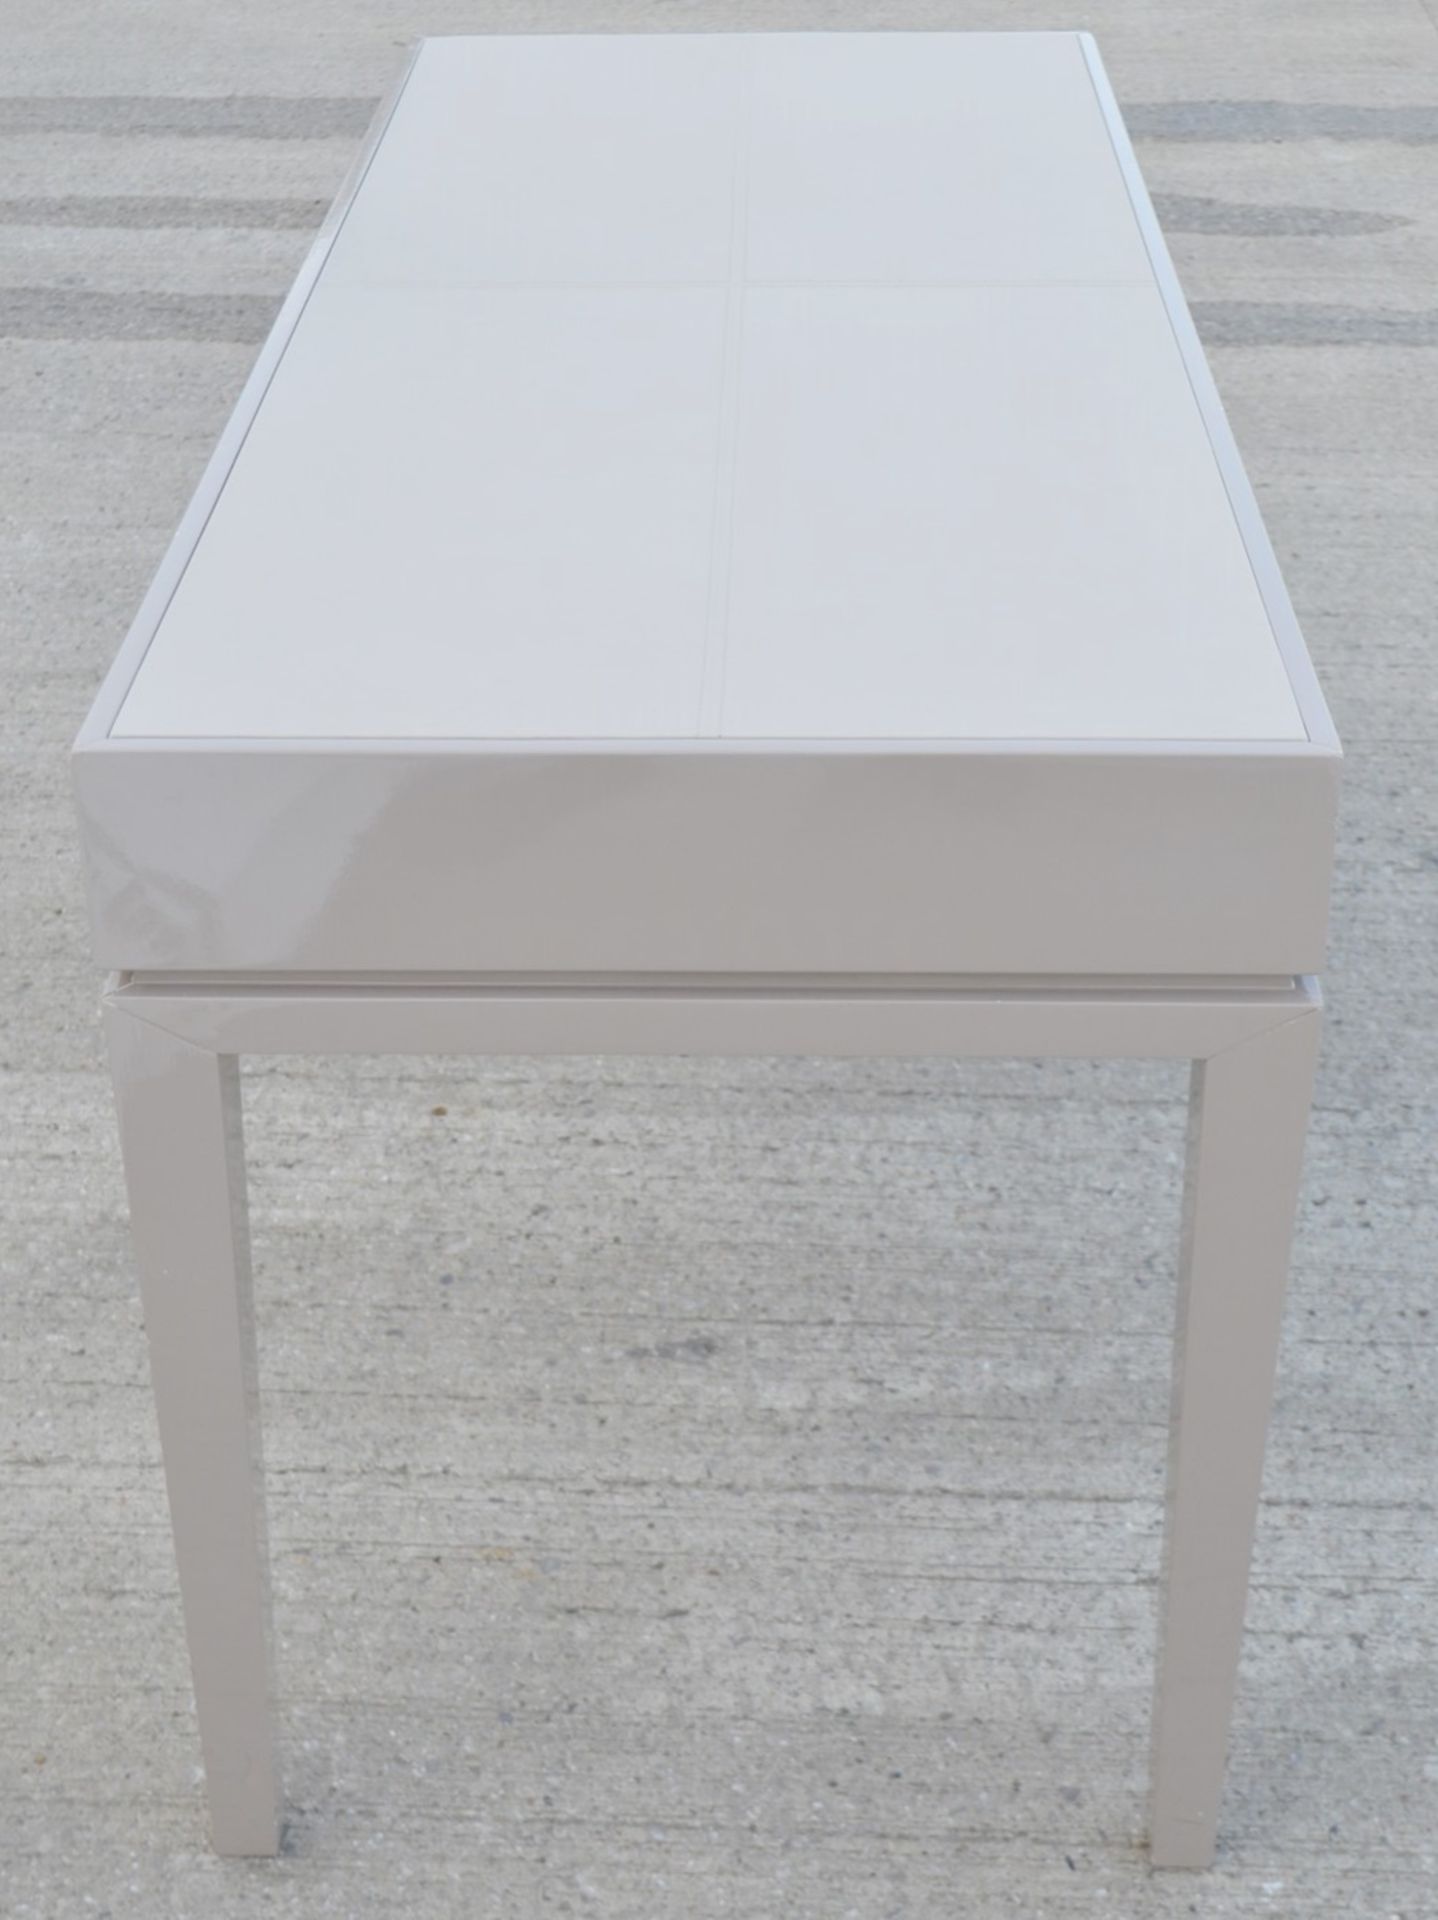 1 x FRATO 'Buzios' Designer Desk - Made In Italy - 160 x D65 x H78cm - Original Price £2,759 - Image 12 of 13